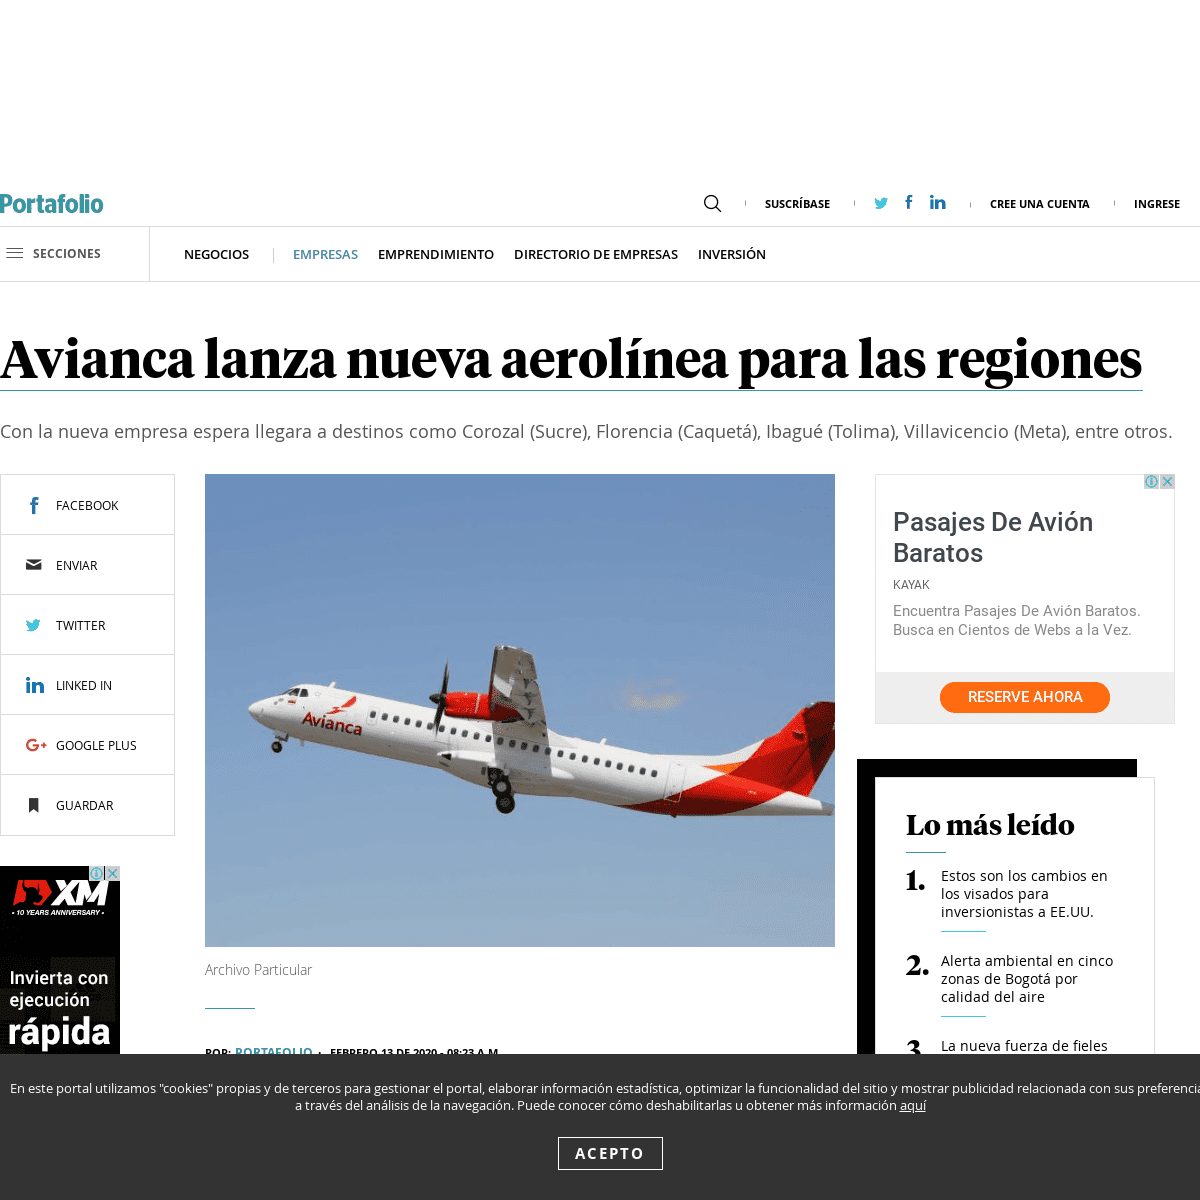 A complete backup of www.portafolio.co/negocios/empresas/avianca-lanza-nueva-aerolinea-para-las-regiones-538067